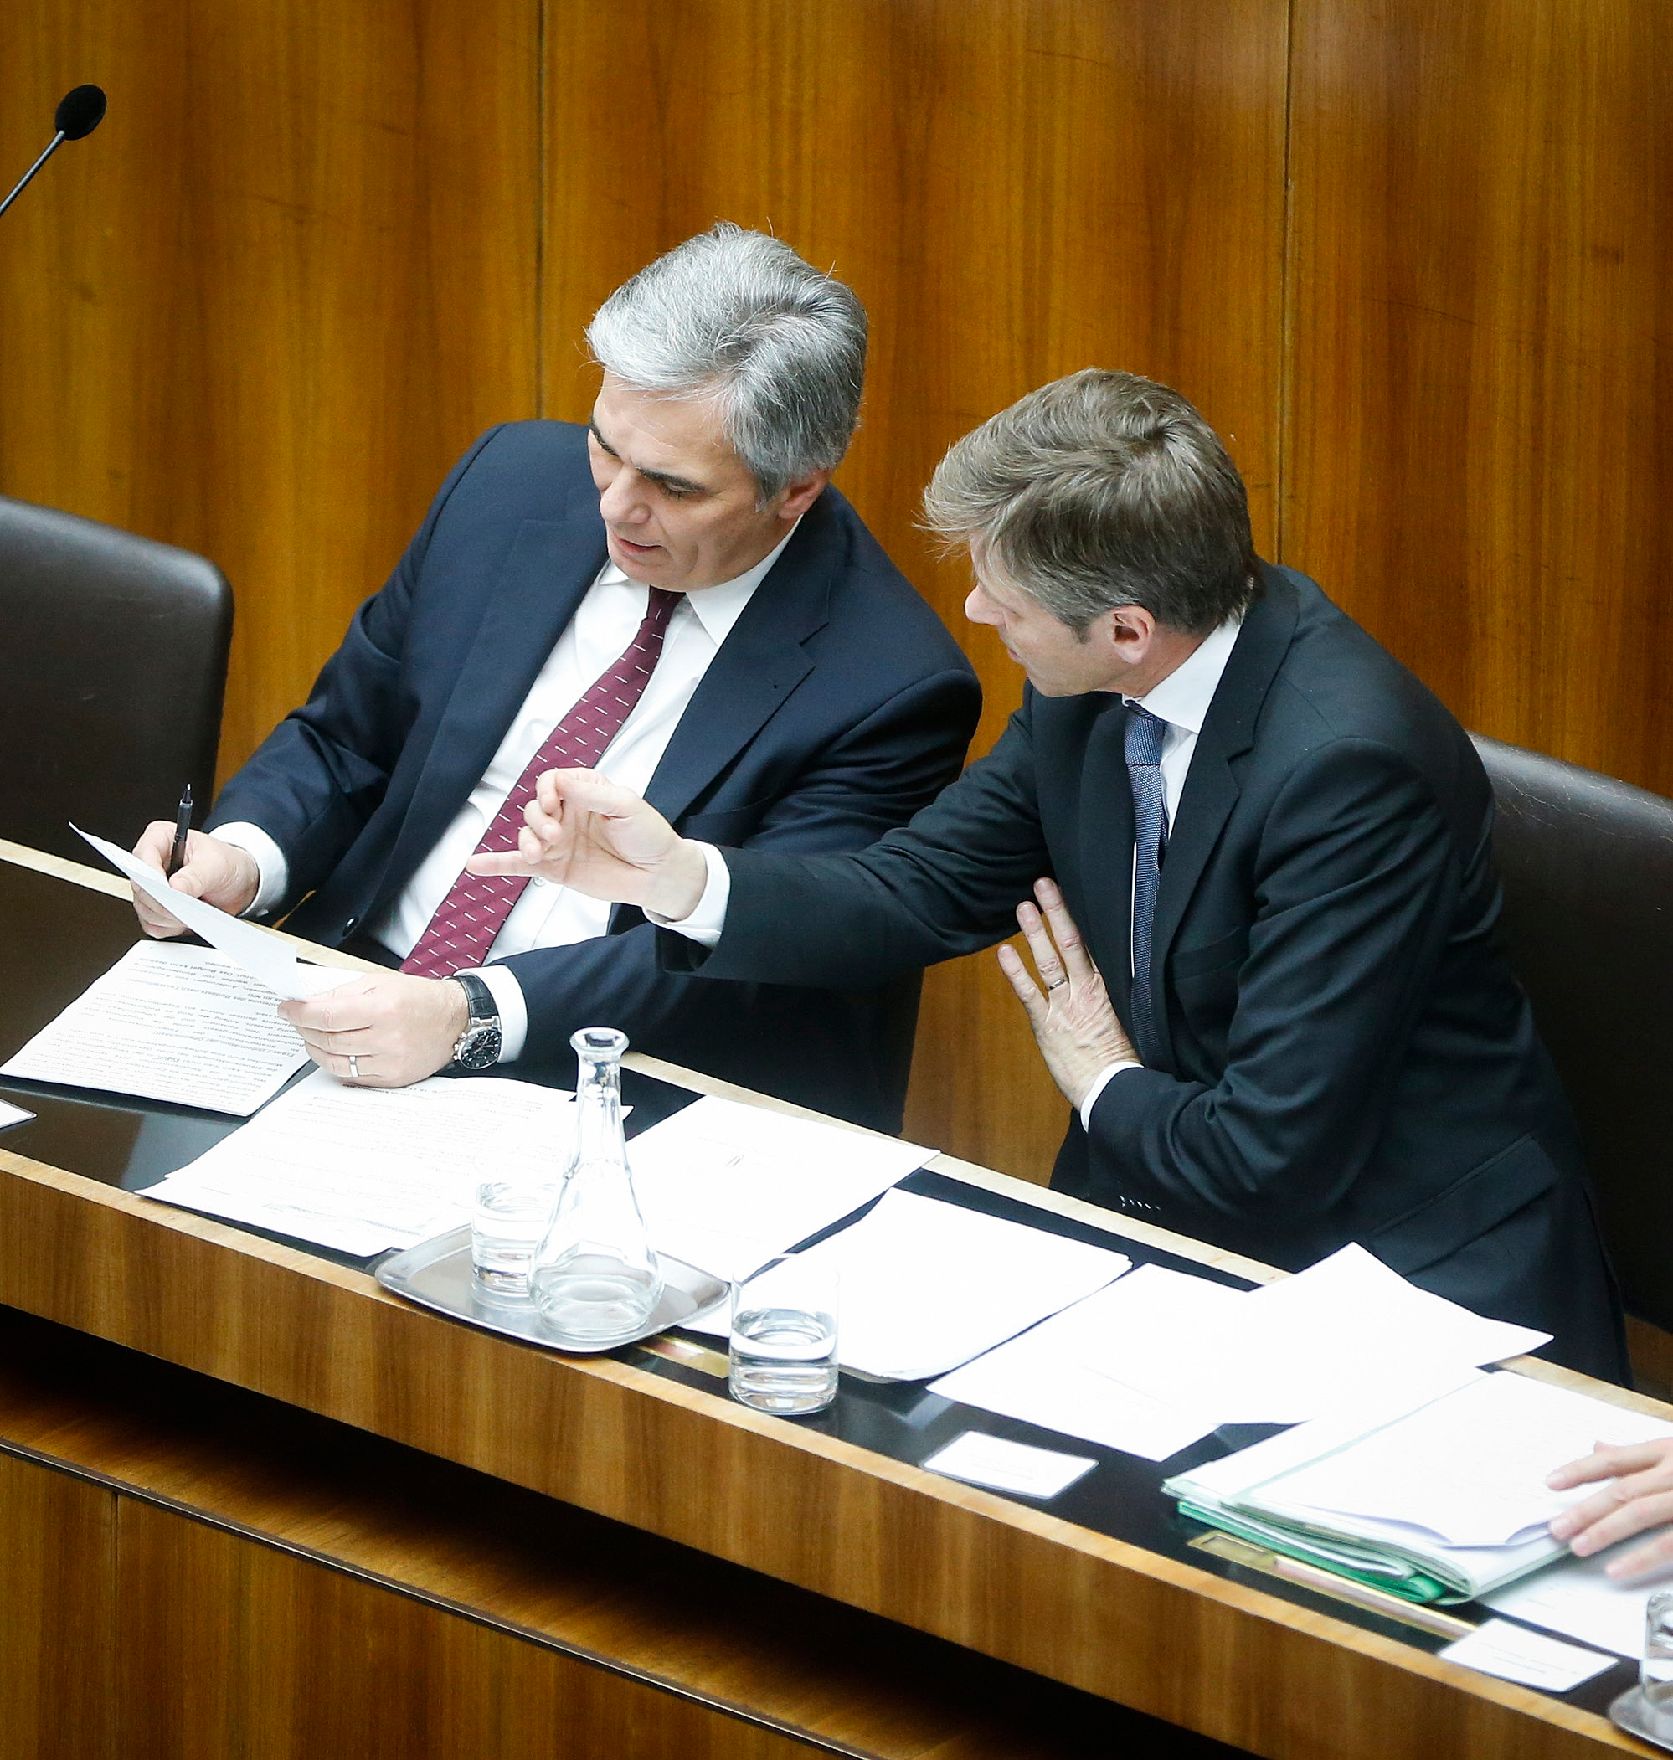 Am 3. Dezember 2013 beantwortete Bundeskanzler Werner Faymann (l.) bei der Nationalratssitzung im Parlament eine Dringliche Anfrage bezüglich der budgetären Lage. Im Bild mit Staatssekretär Josef Ostermayer (r.).